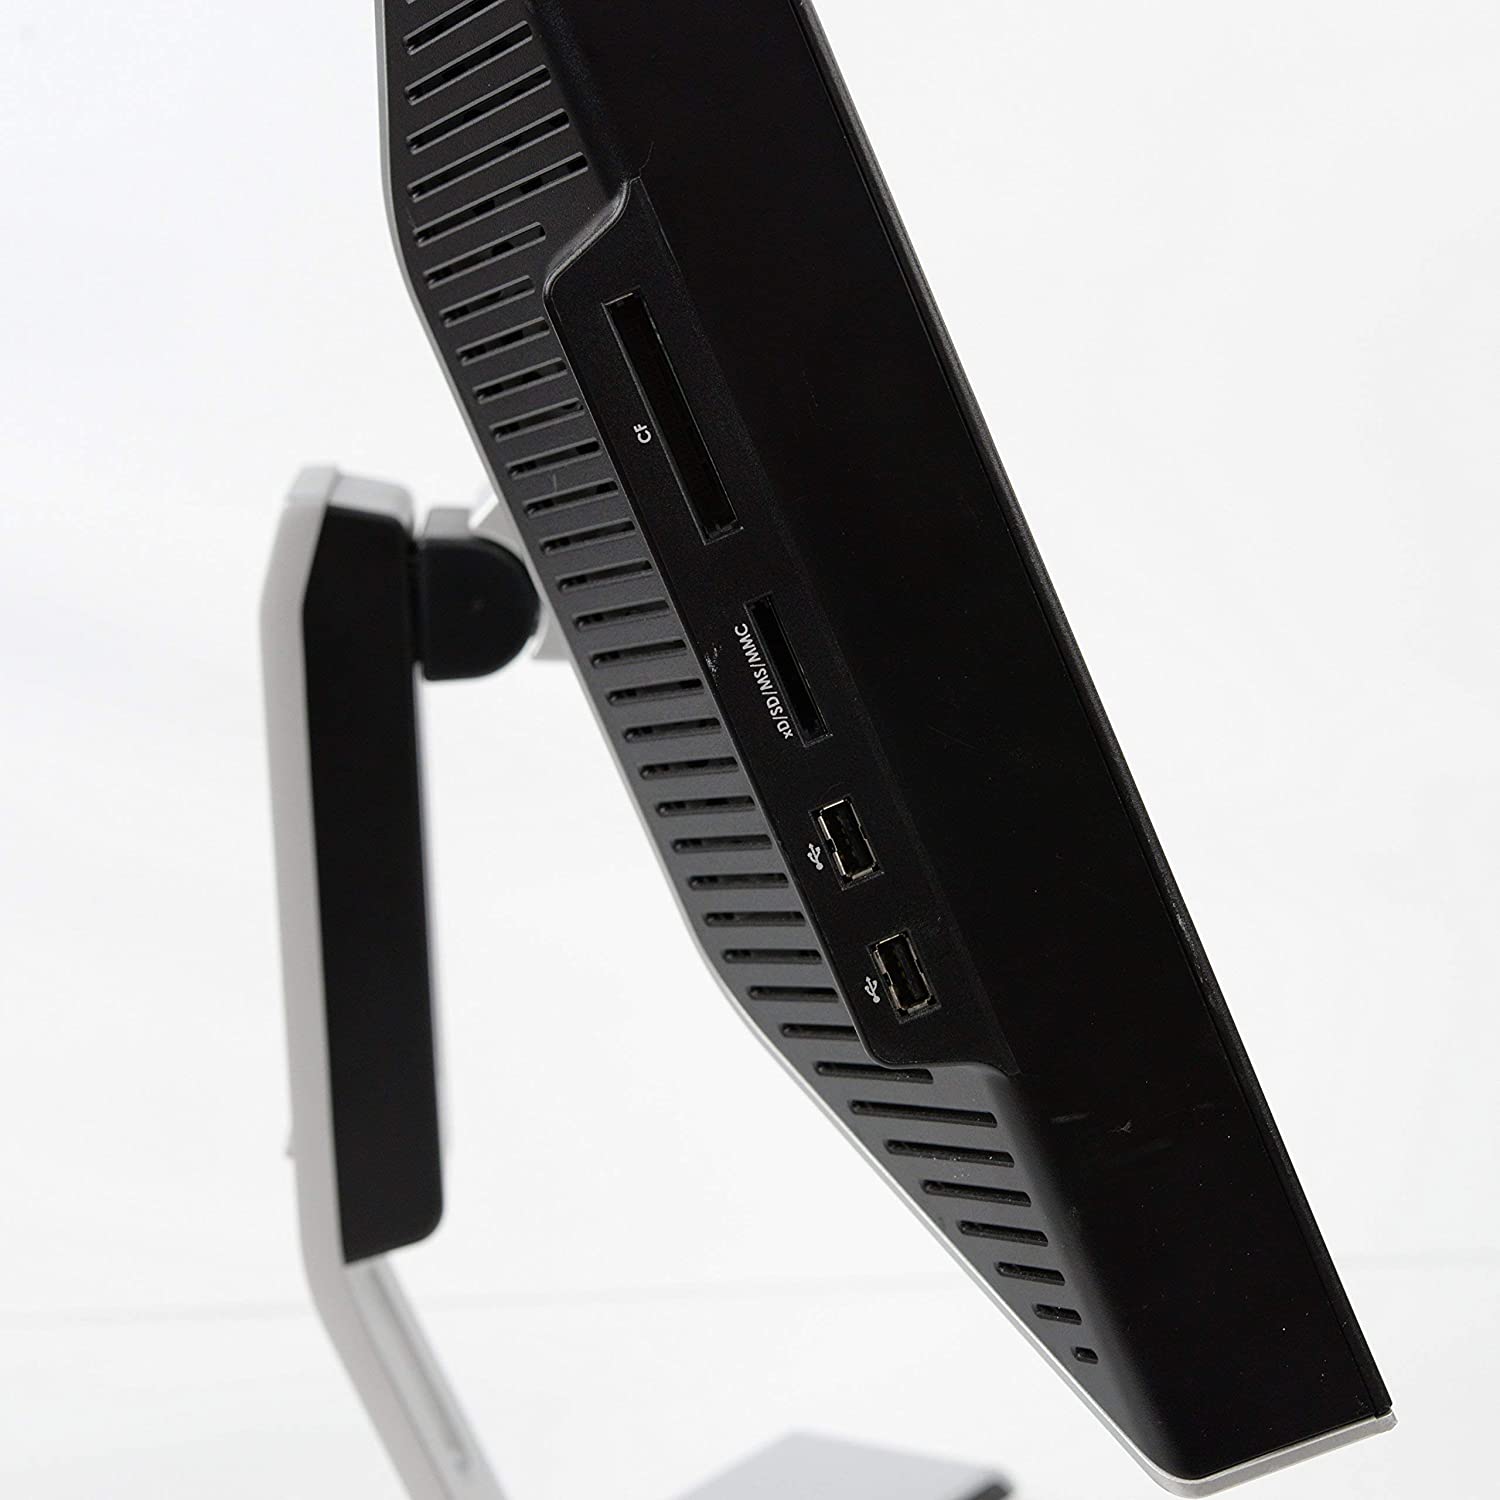 Profilansicht eines Dell UltraSharp-Monitors.